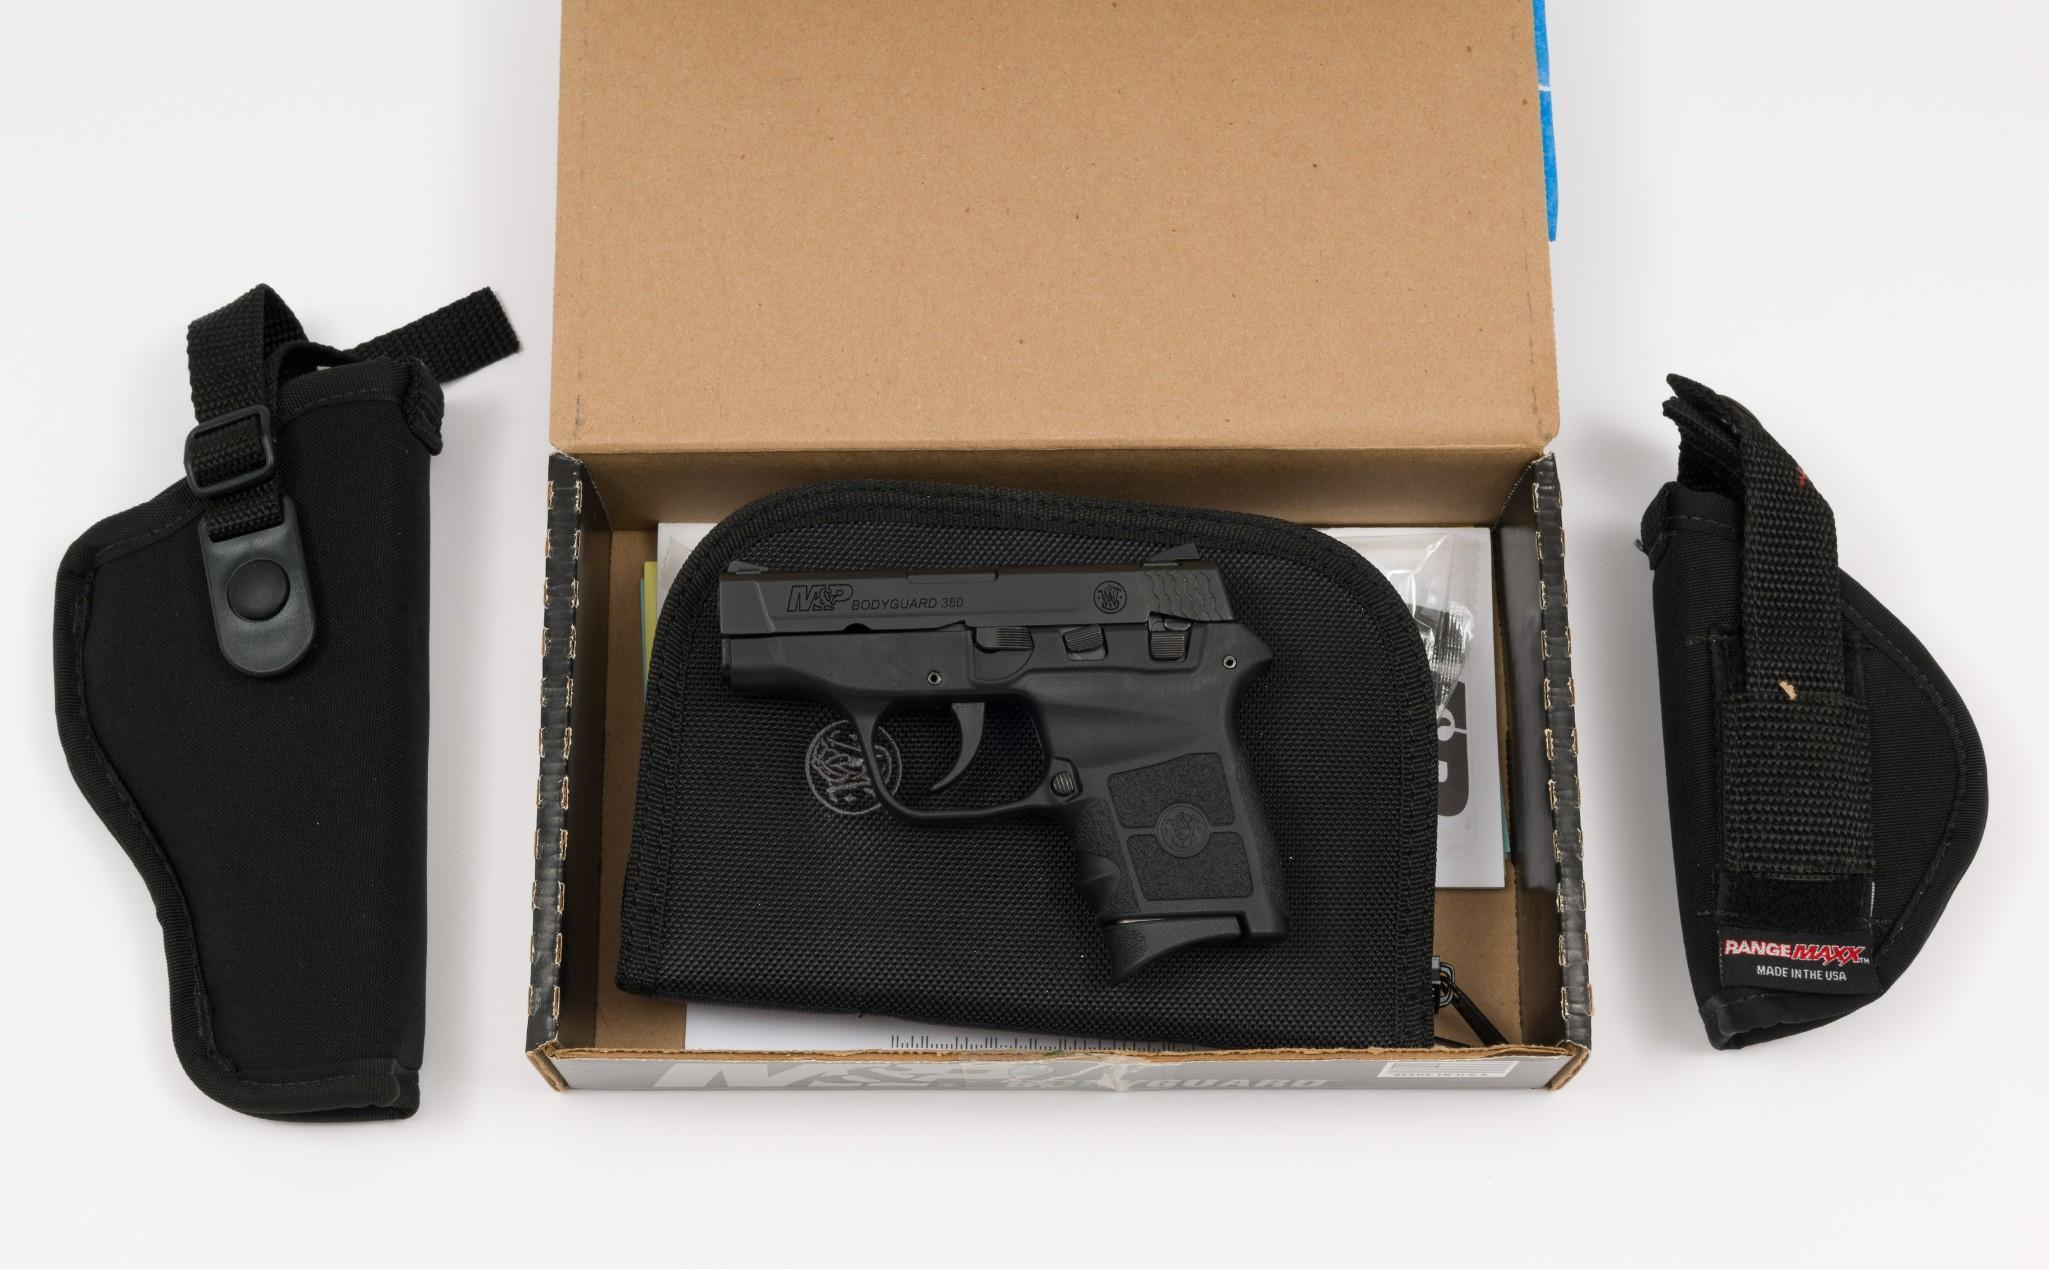 Smith & Wesson Bodyguard Semi Auto Pistol, Caliber .380ACP